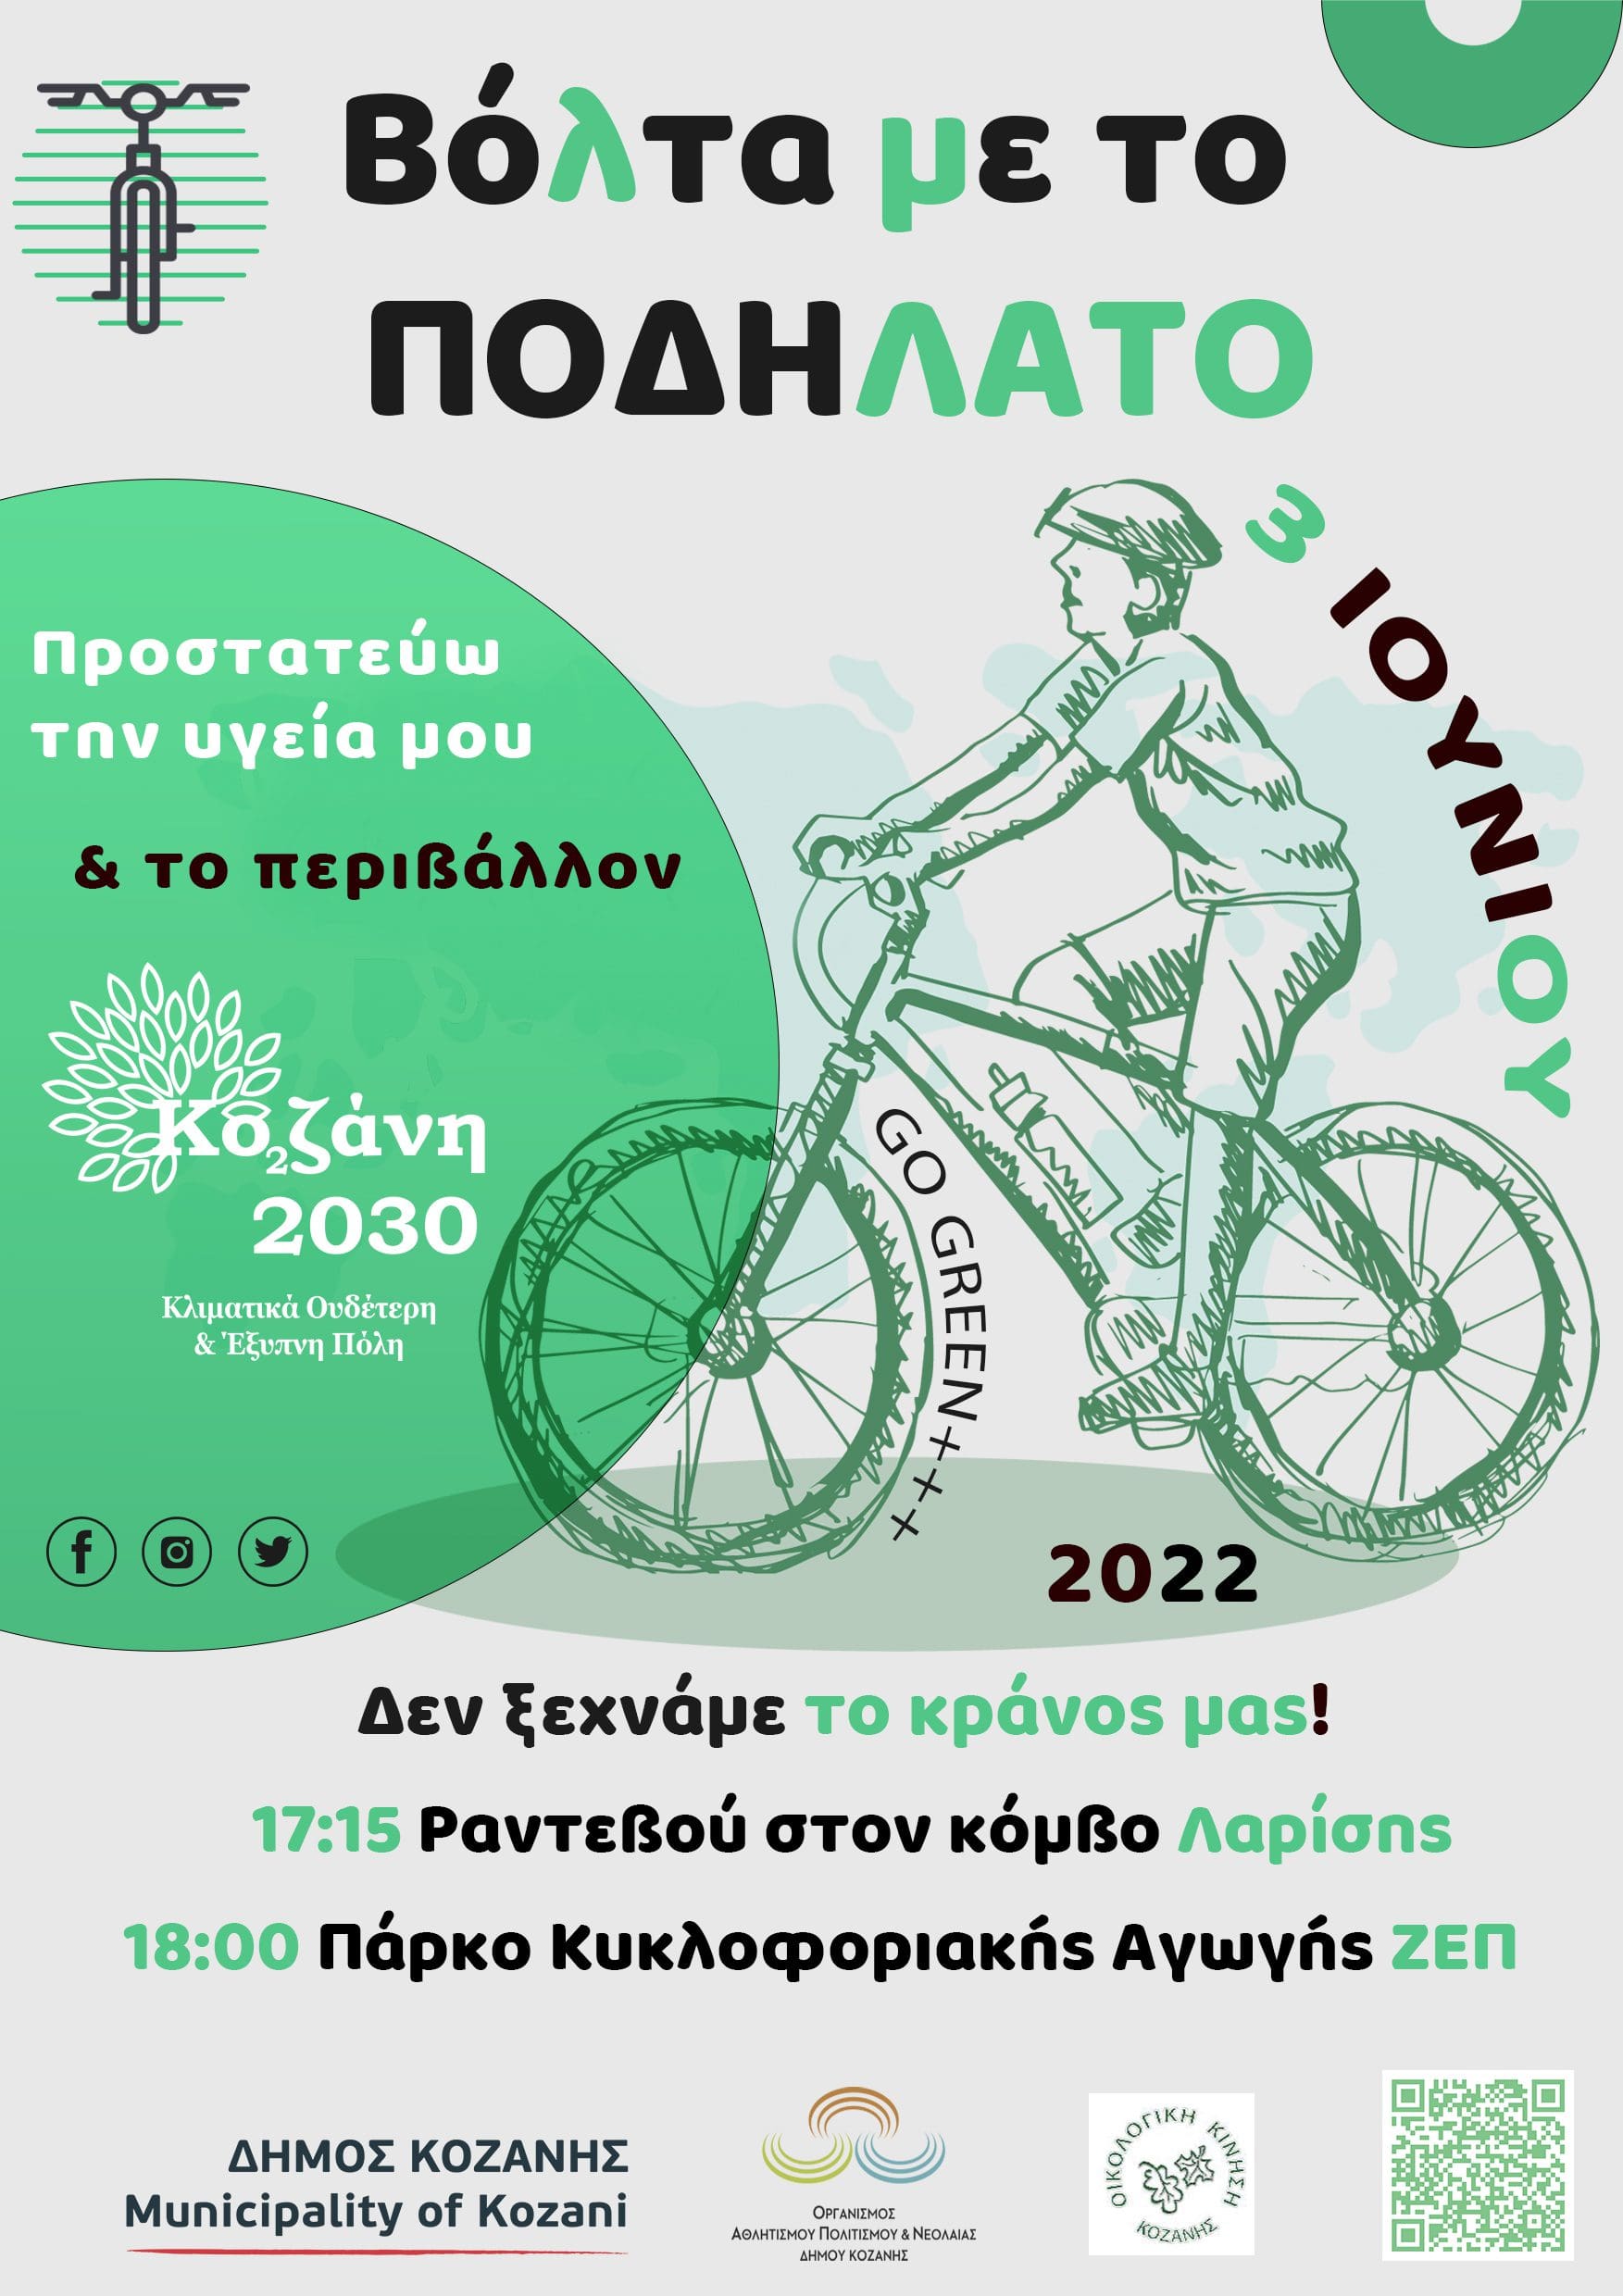 3η Ιουνίου-Παγκόσμια Ημέρα Ποδηλάτου: Ποδηλατάδα για μικρούς & μεγάλους από το Δήμο Κοζάνης & την Οικολογική Κίνηση Κοζάνης!